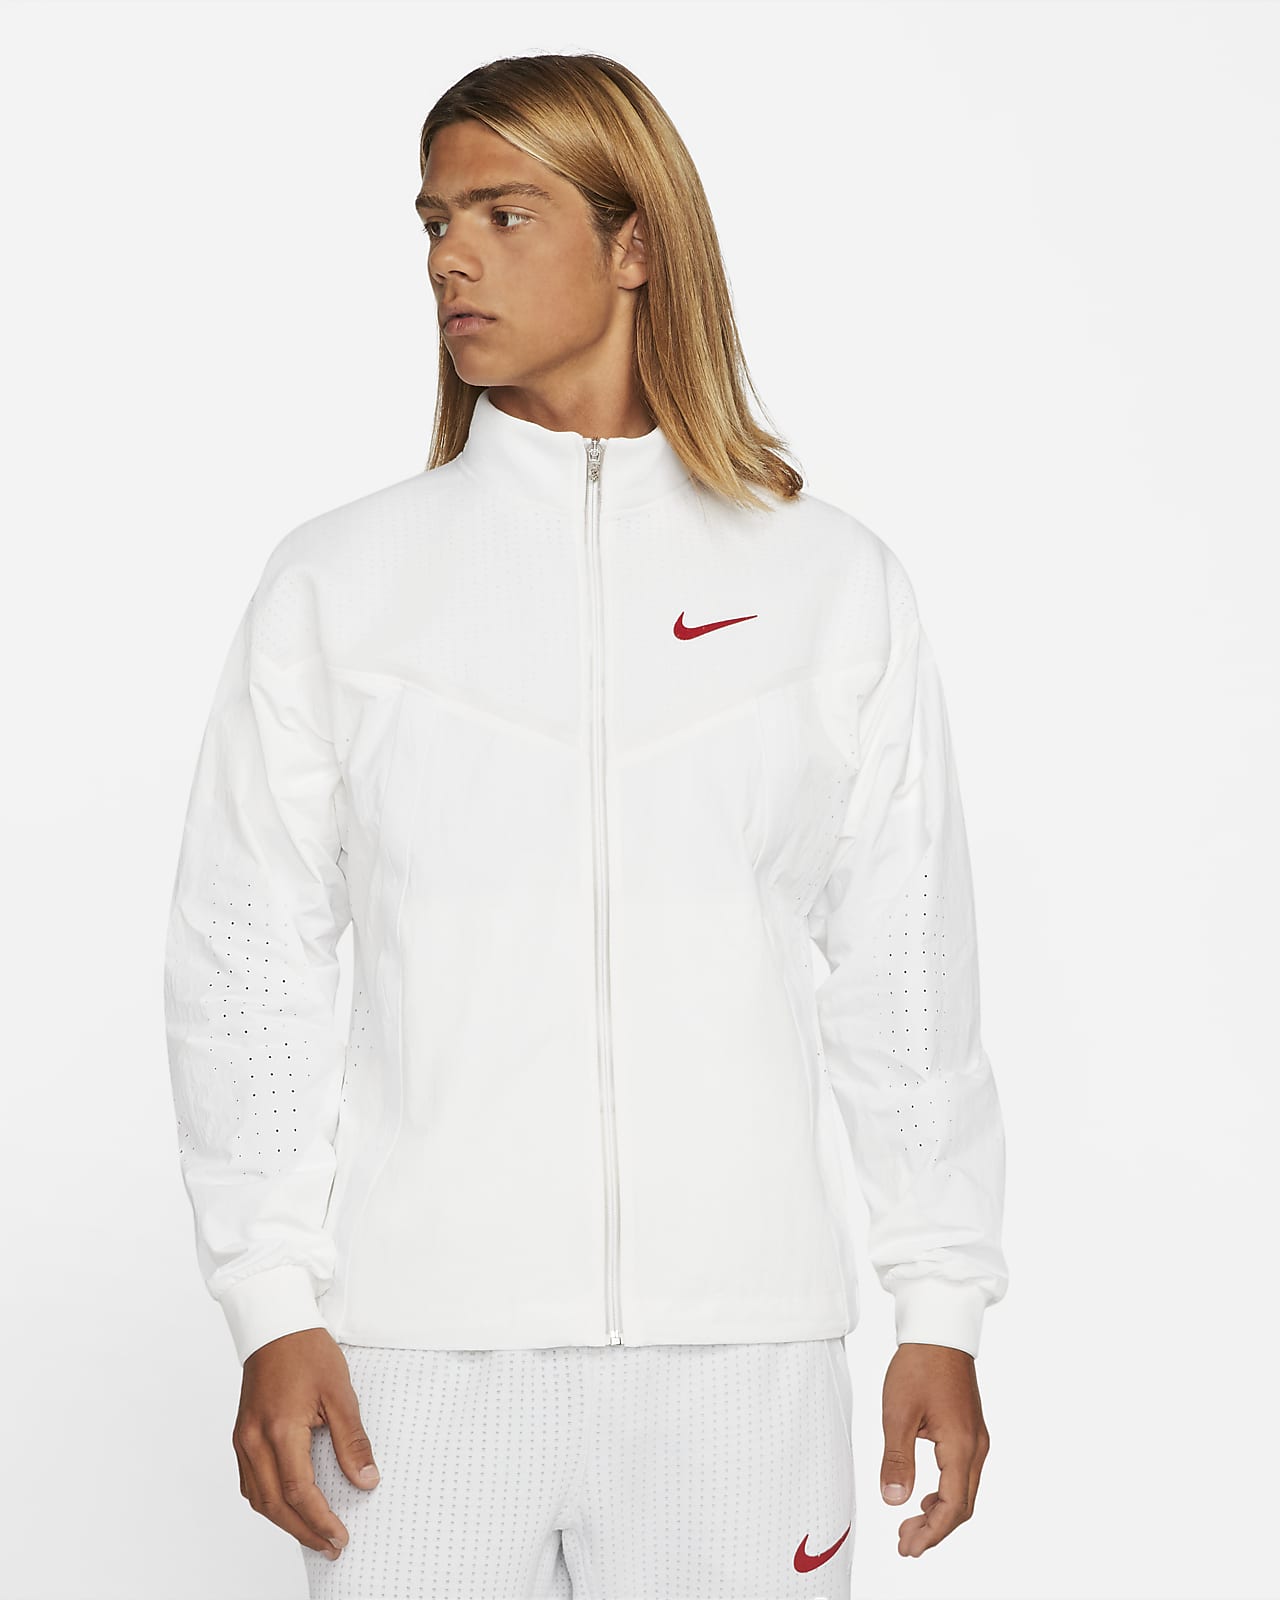 Nike Sportswear Men's Jacket. Nike ID